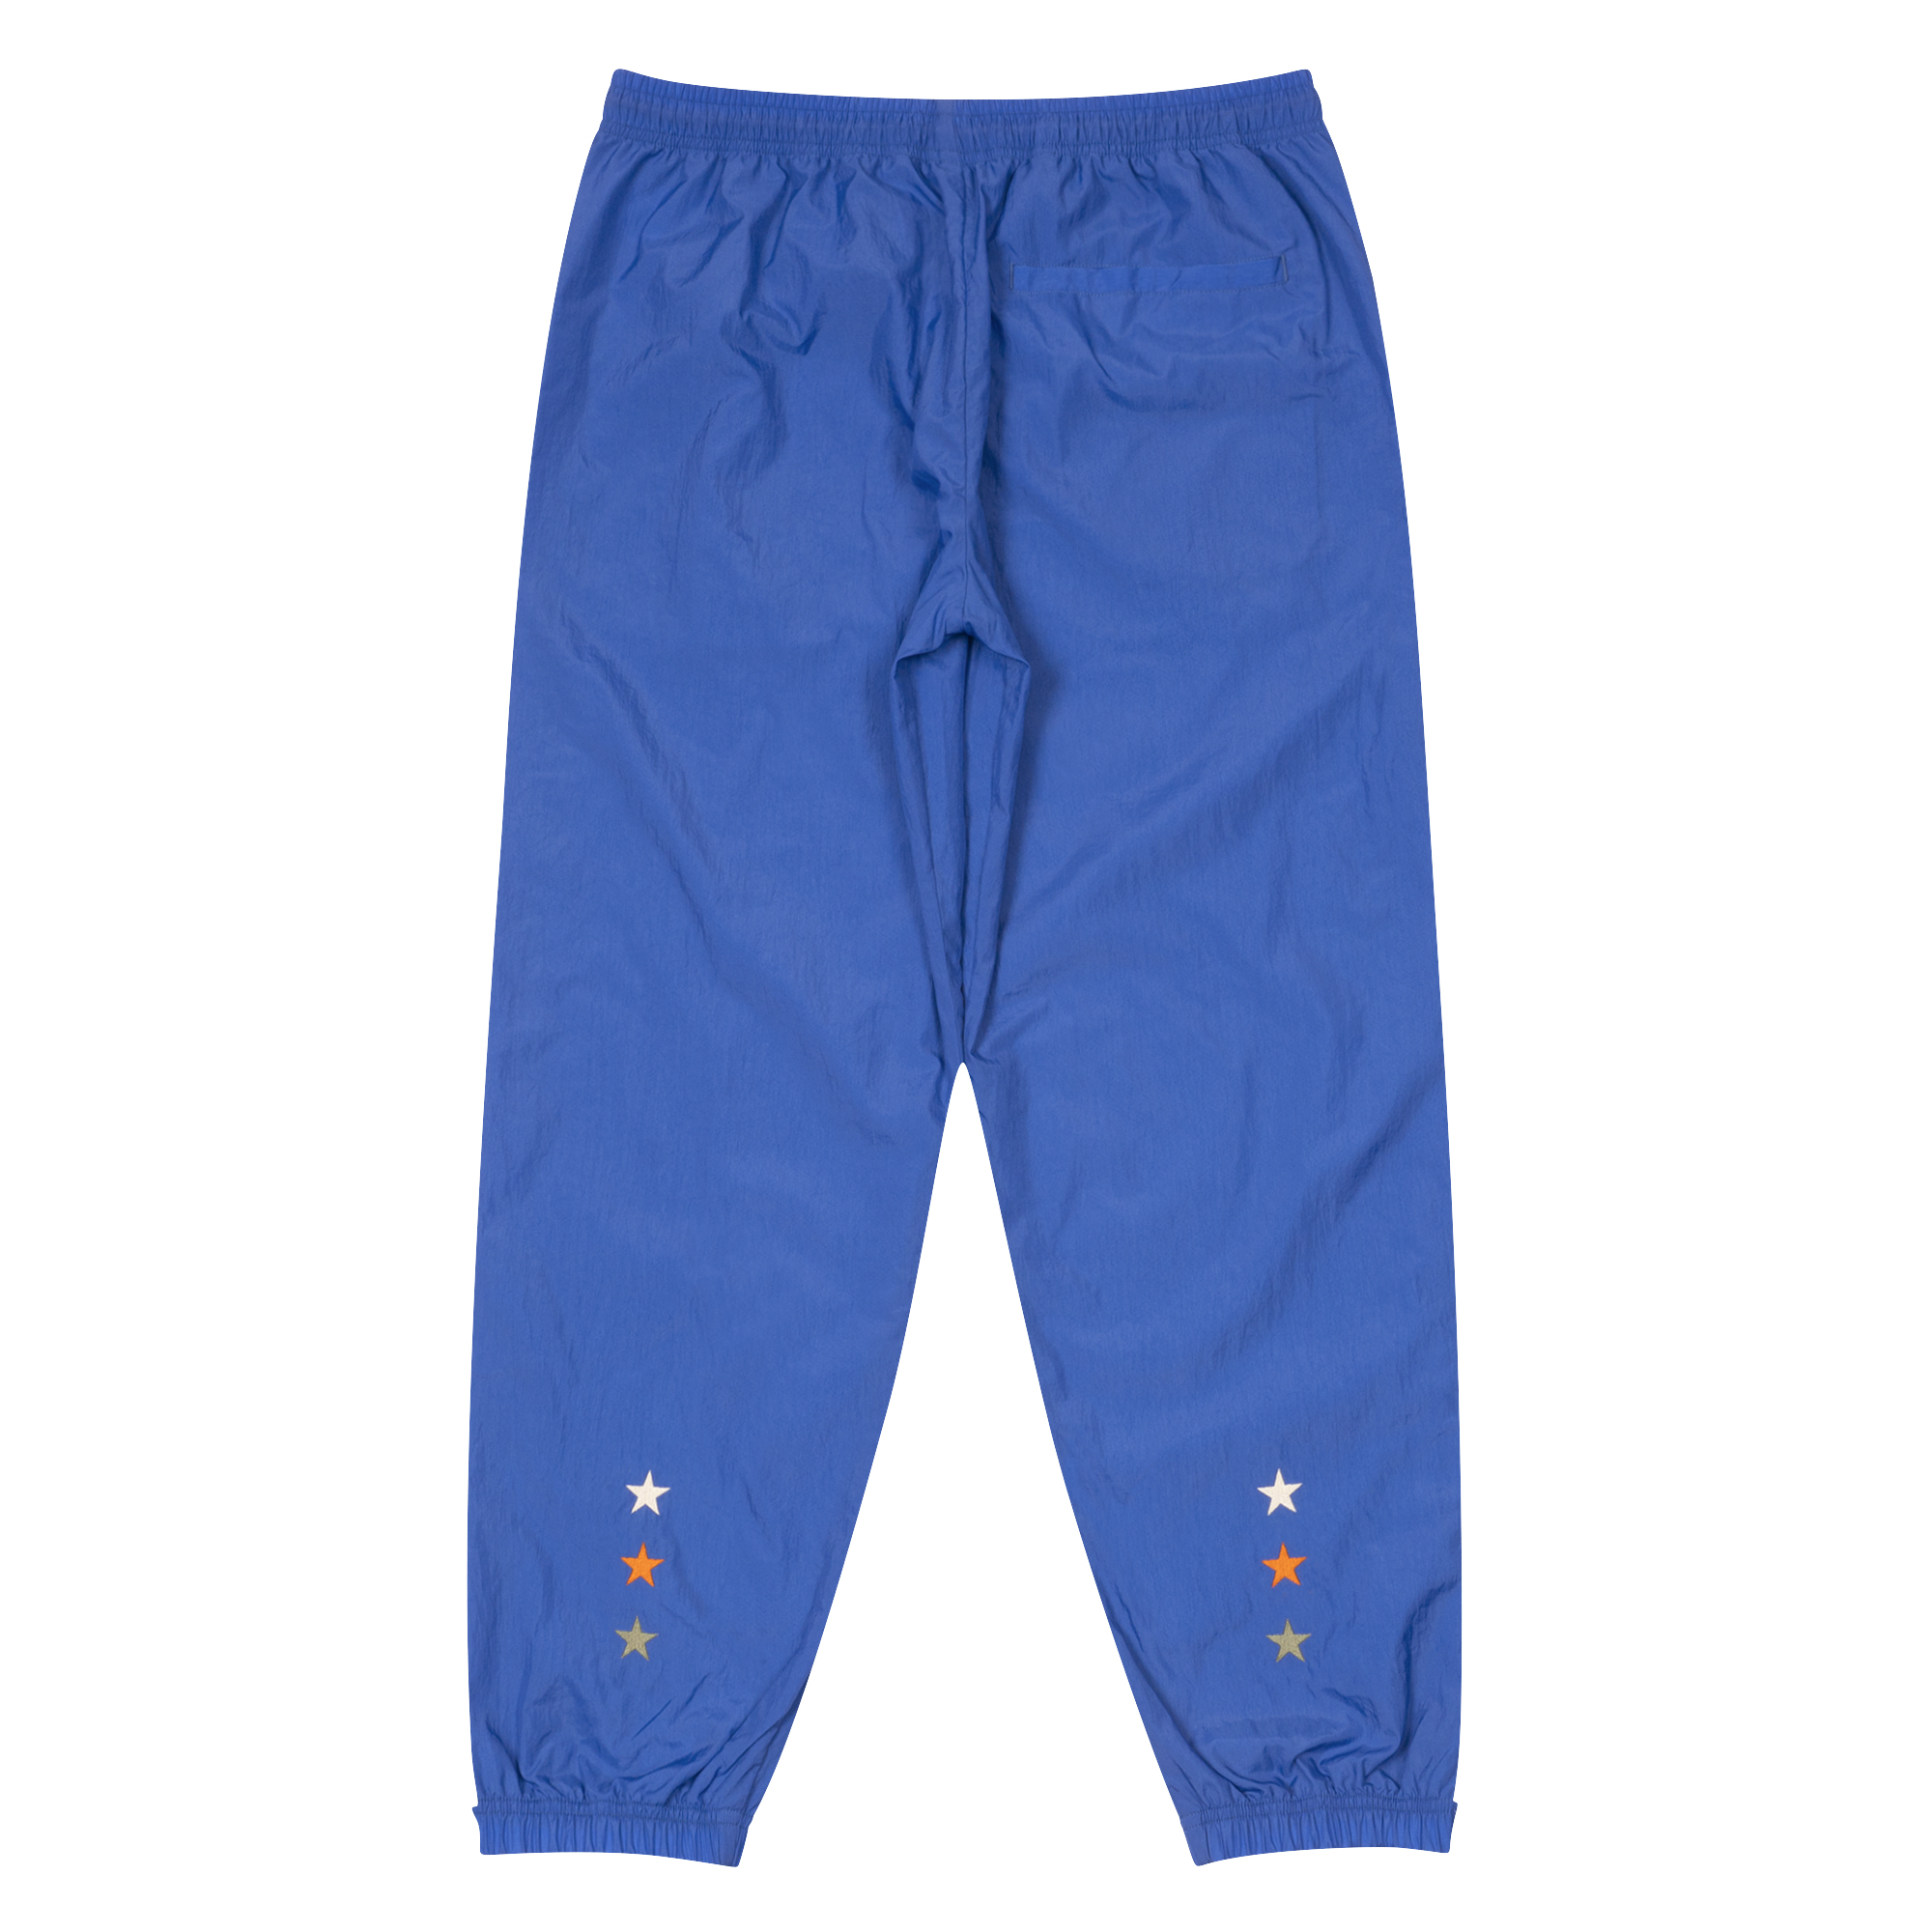 ballaholic TSC Long Pants (blue)カラーはブルー